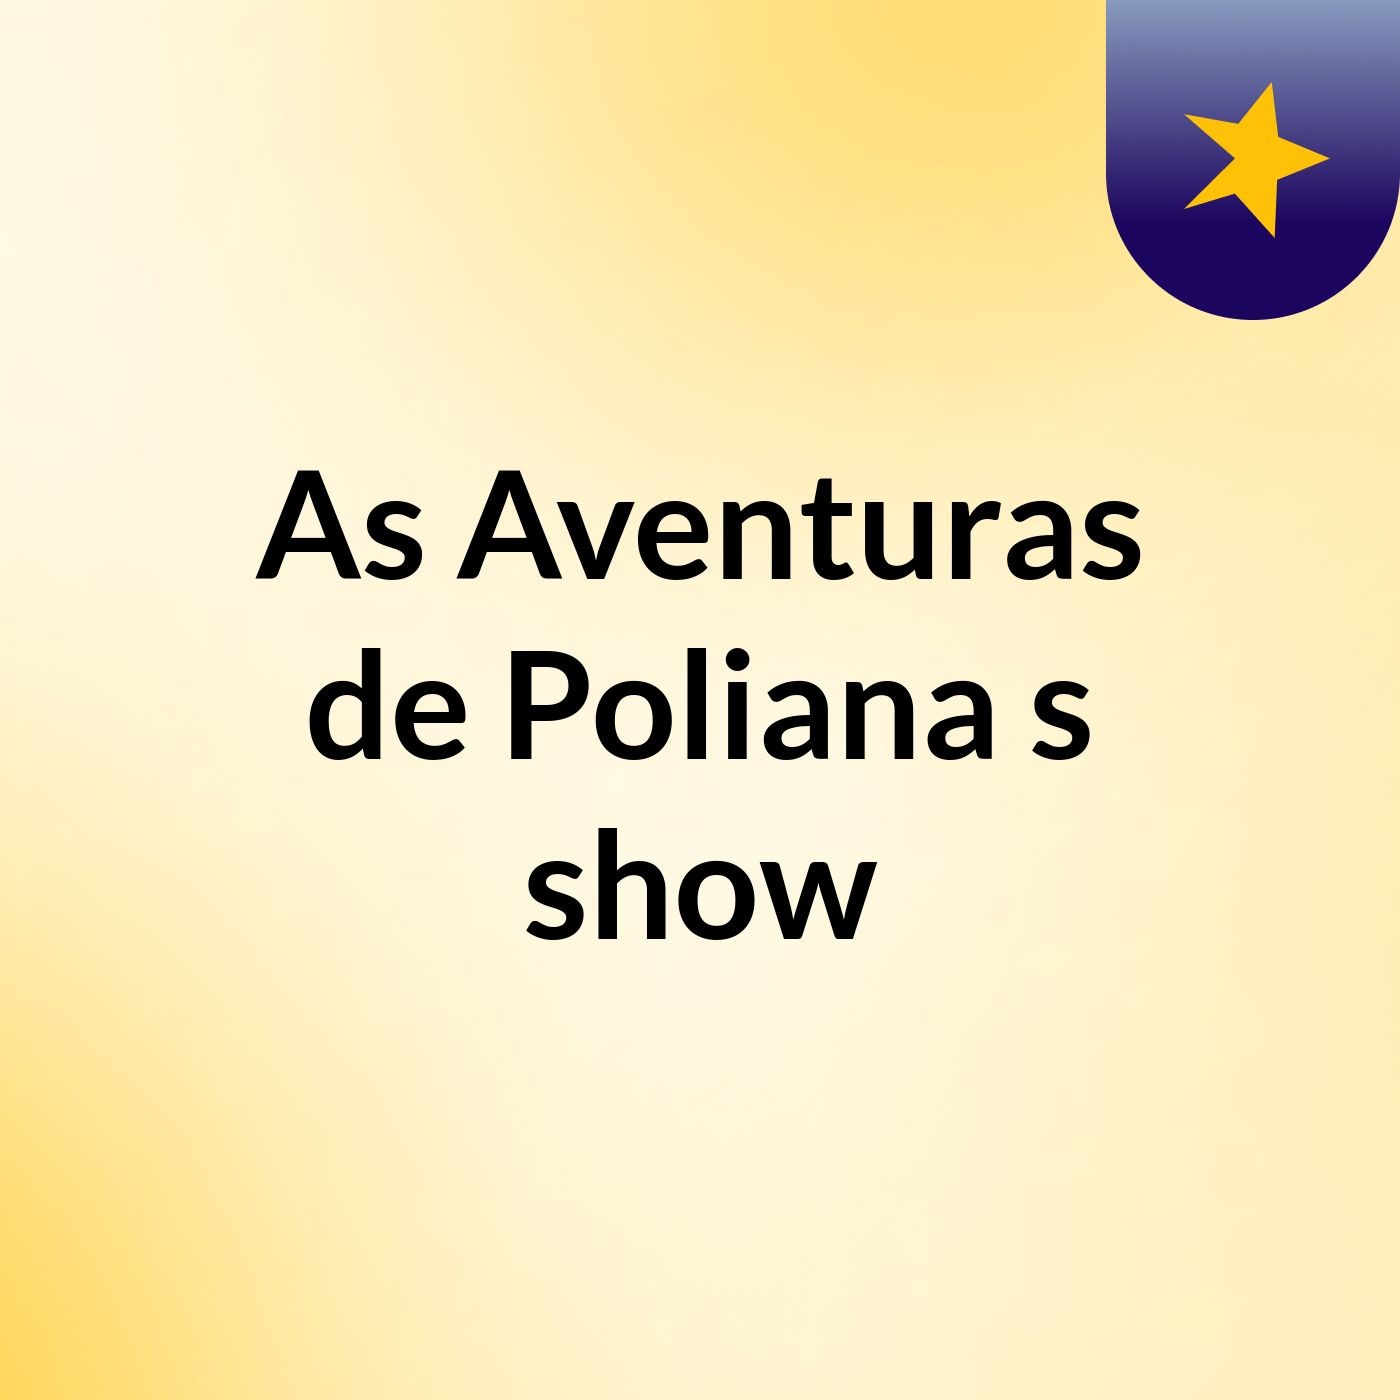 As Aventuras de Poliana's show